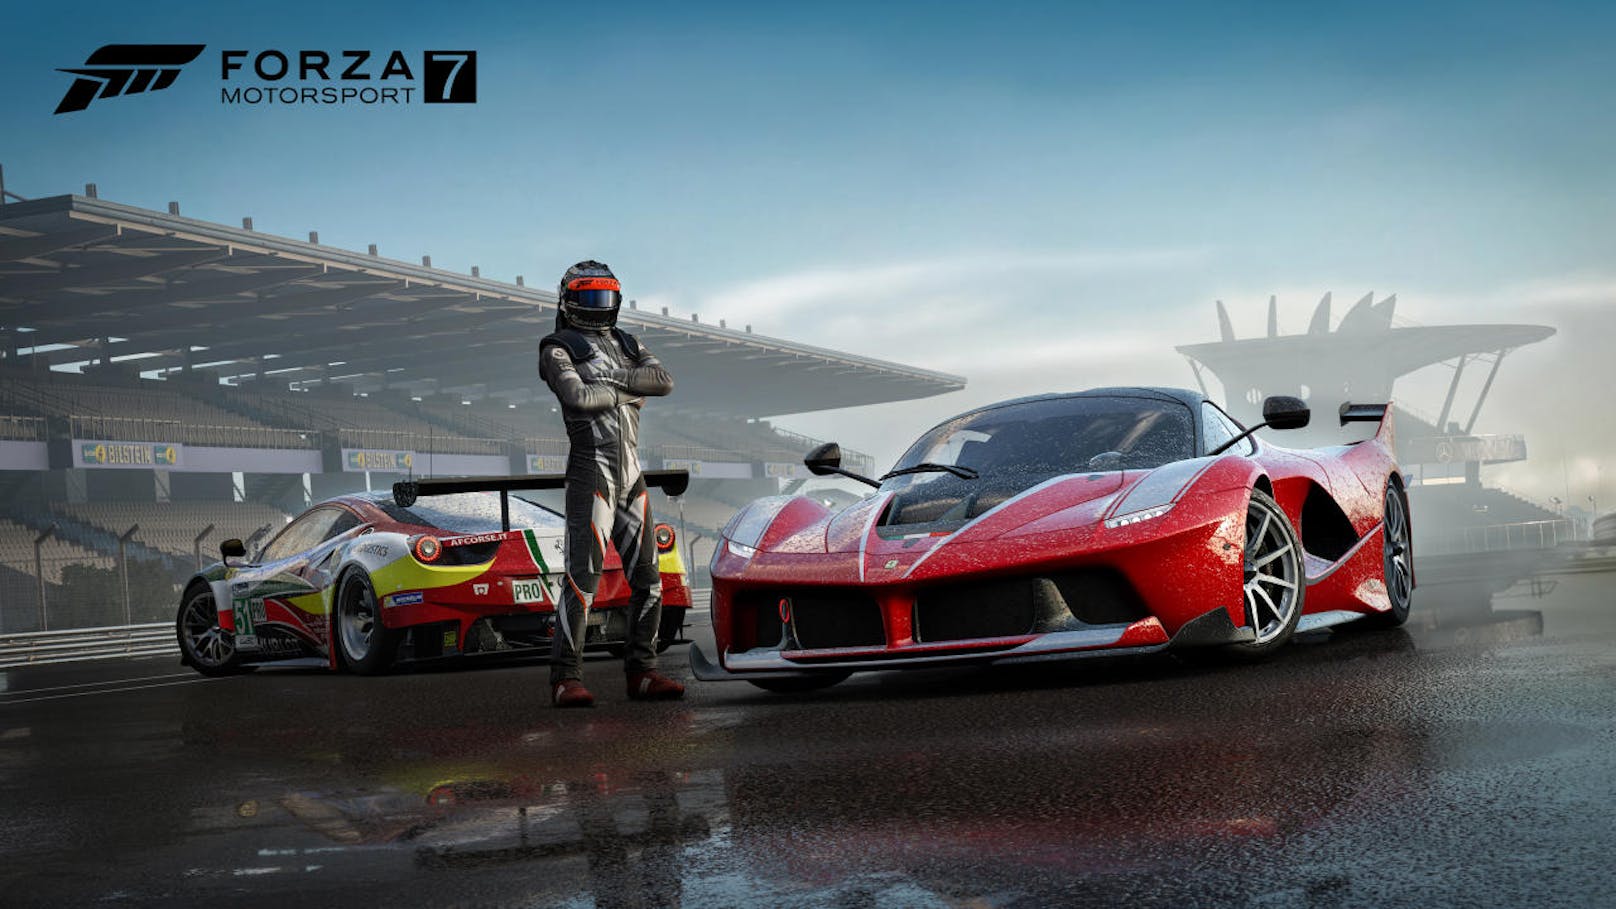 <b>Oktober 2017:</b> <b>Forza Motorsport 7</b> überzeugt auf der Xbox One mit toller Grafik. Besondere Zuckerl sind Nachtrennen und die überarbeiteten Wettereffekte. Auch der Sound passt einwandfrei. Jedes Fahrzeug fühlt sich anders an, jede Auto-Klasse hat ihre eigenen Tücken. Das sorgt für ein realistisches Fahrvergnügen und hält die Spieler gleichzeitig geschickt bei der Stange. <a href="https://www.heute.at/digital/games/story/Forza-7-45276736">Hier lesen Sie unser Game Review.</a>